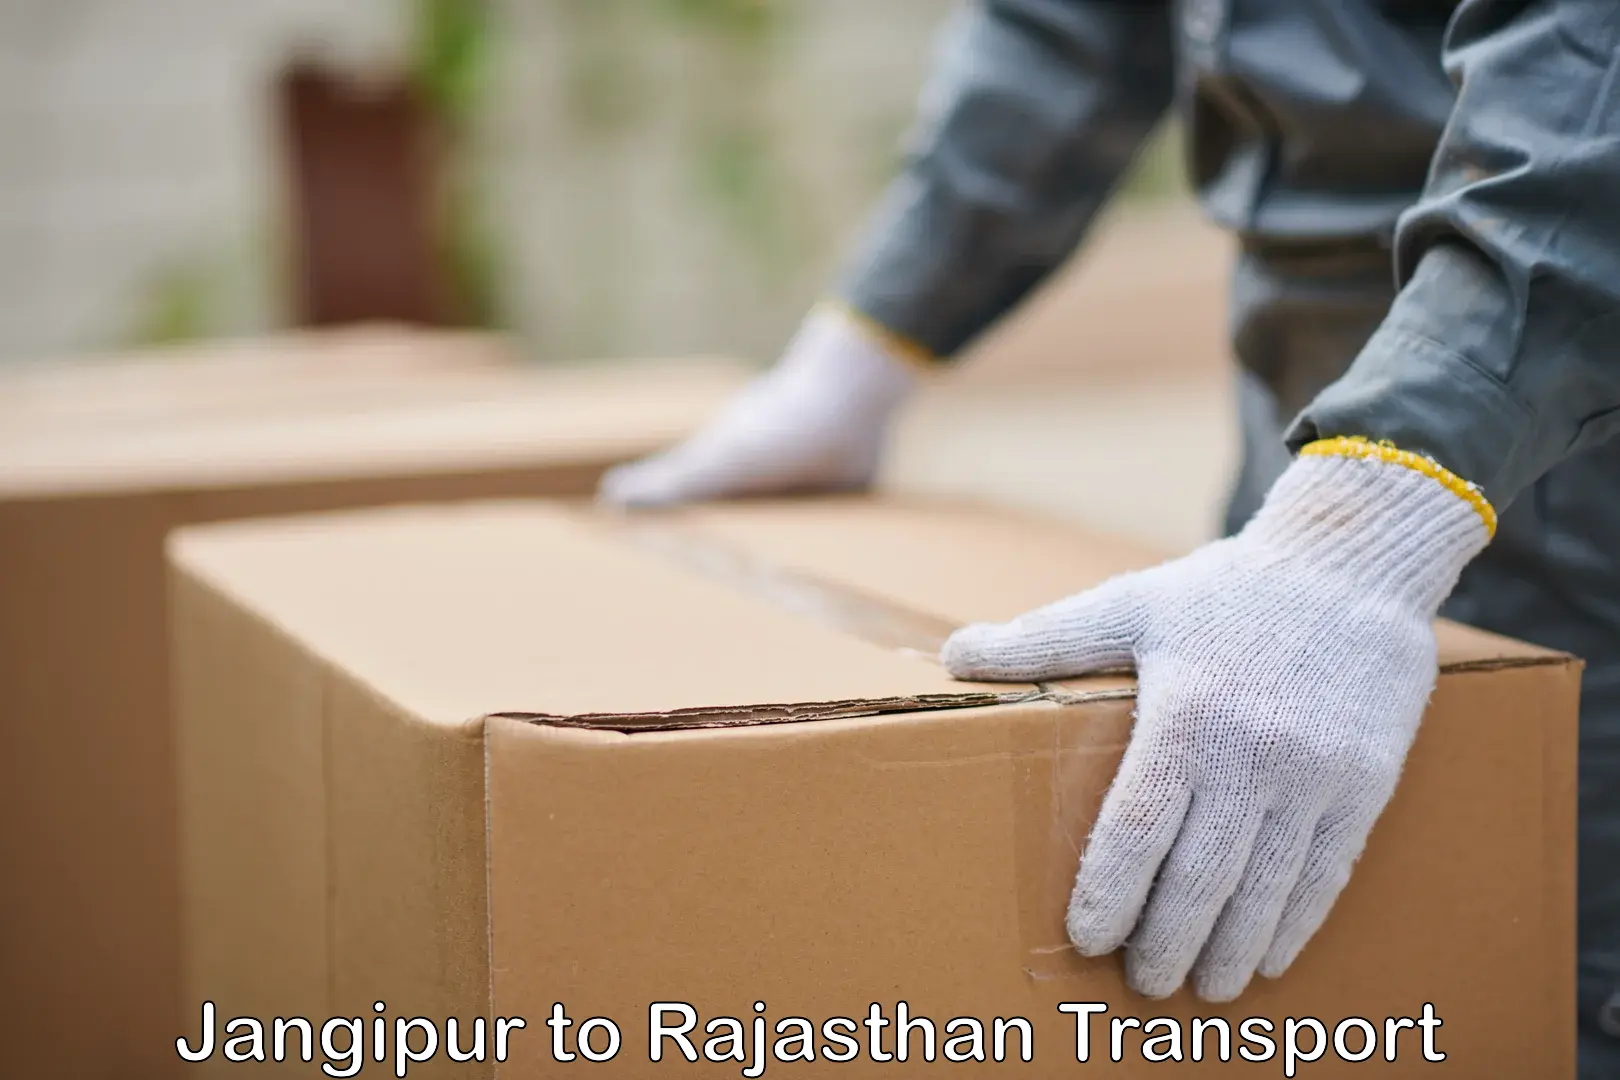 Pick up transport service Jangipur to Rajasthan